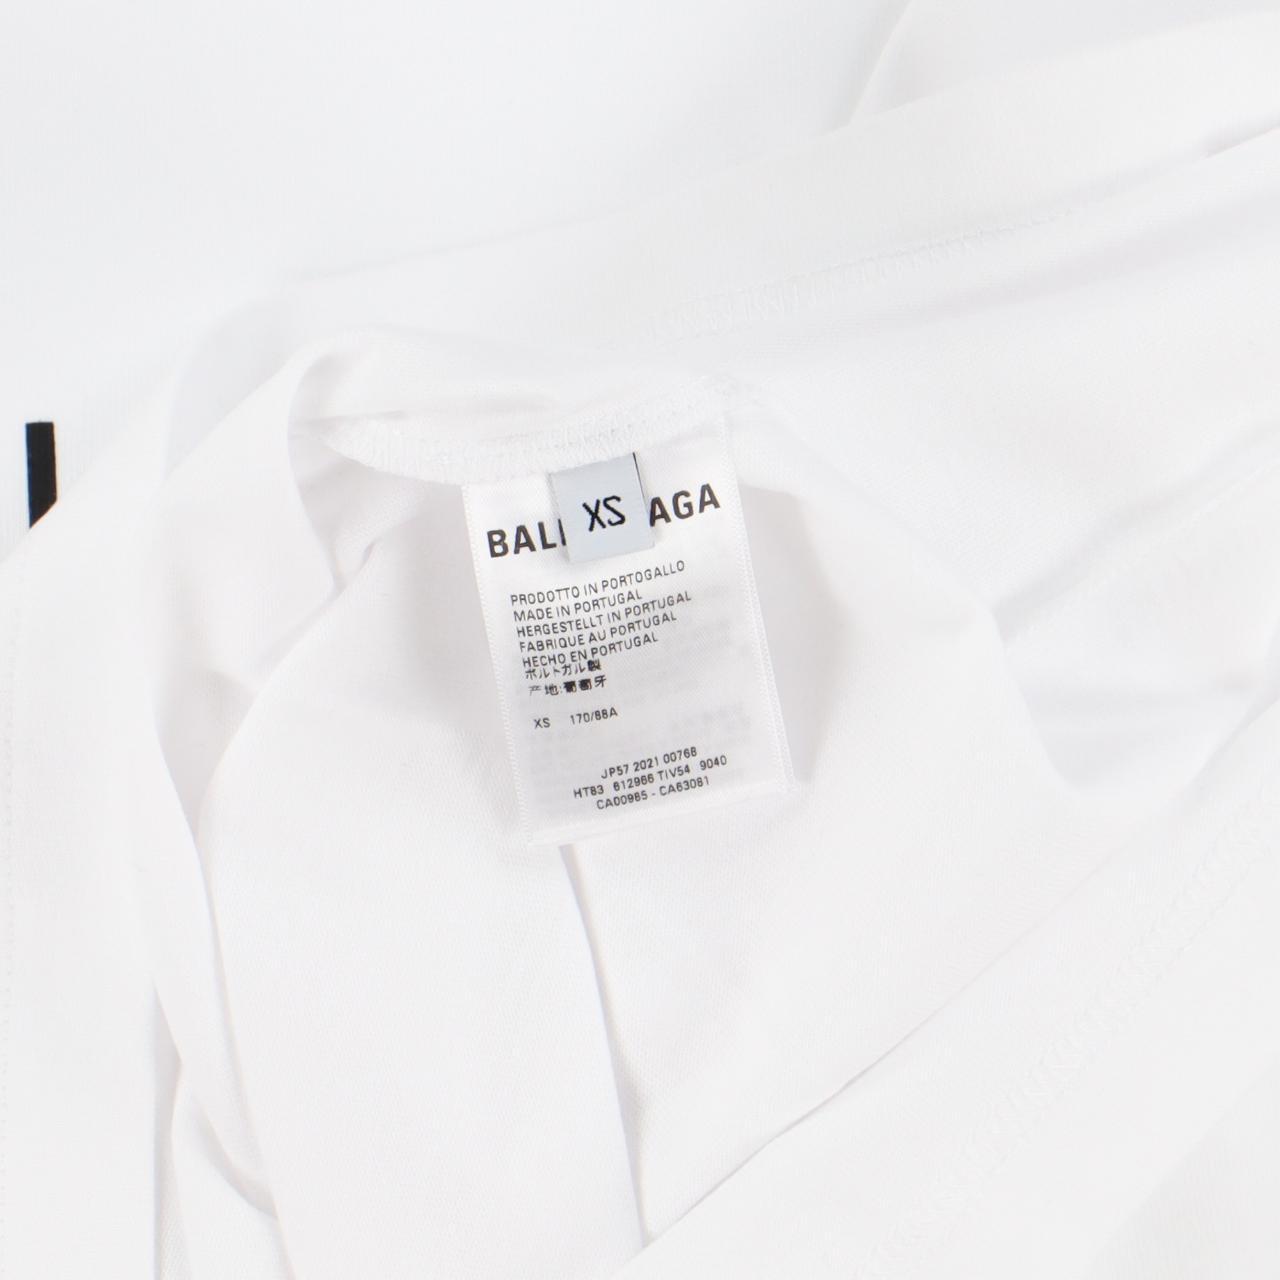 Product Image 3 - Balenciaga White Copyright Logo T-Shirt

-Size